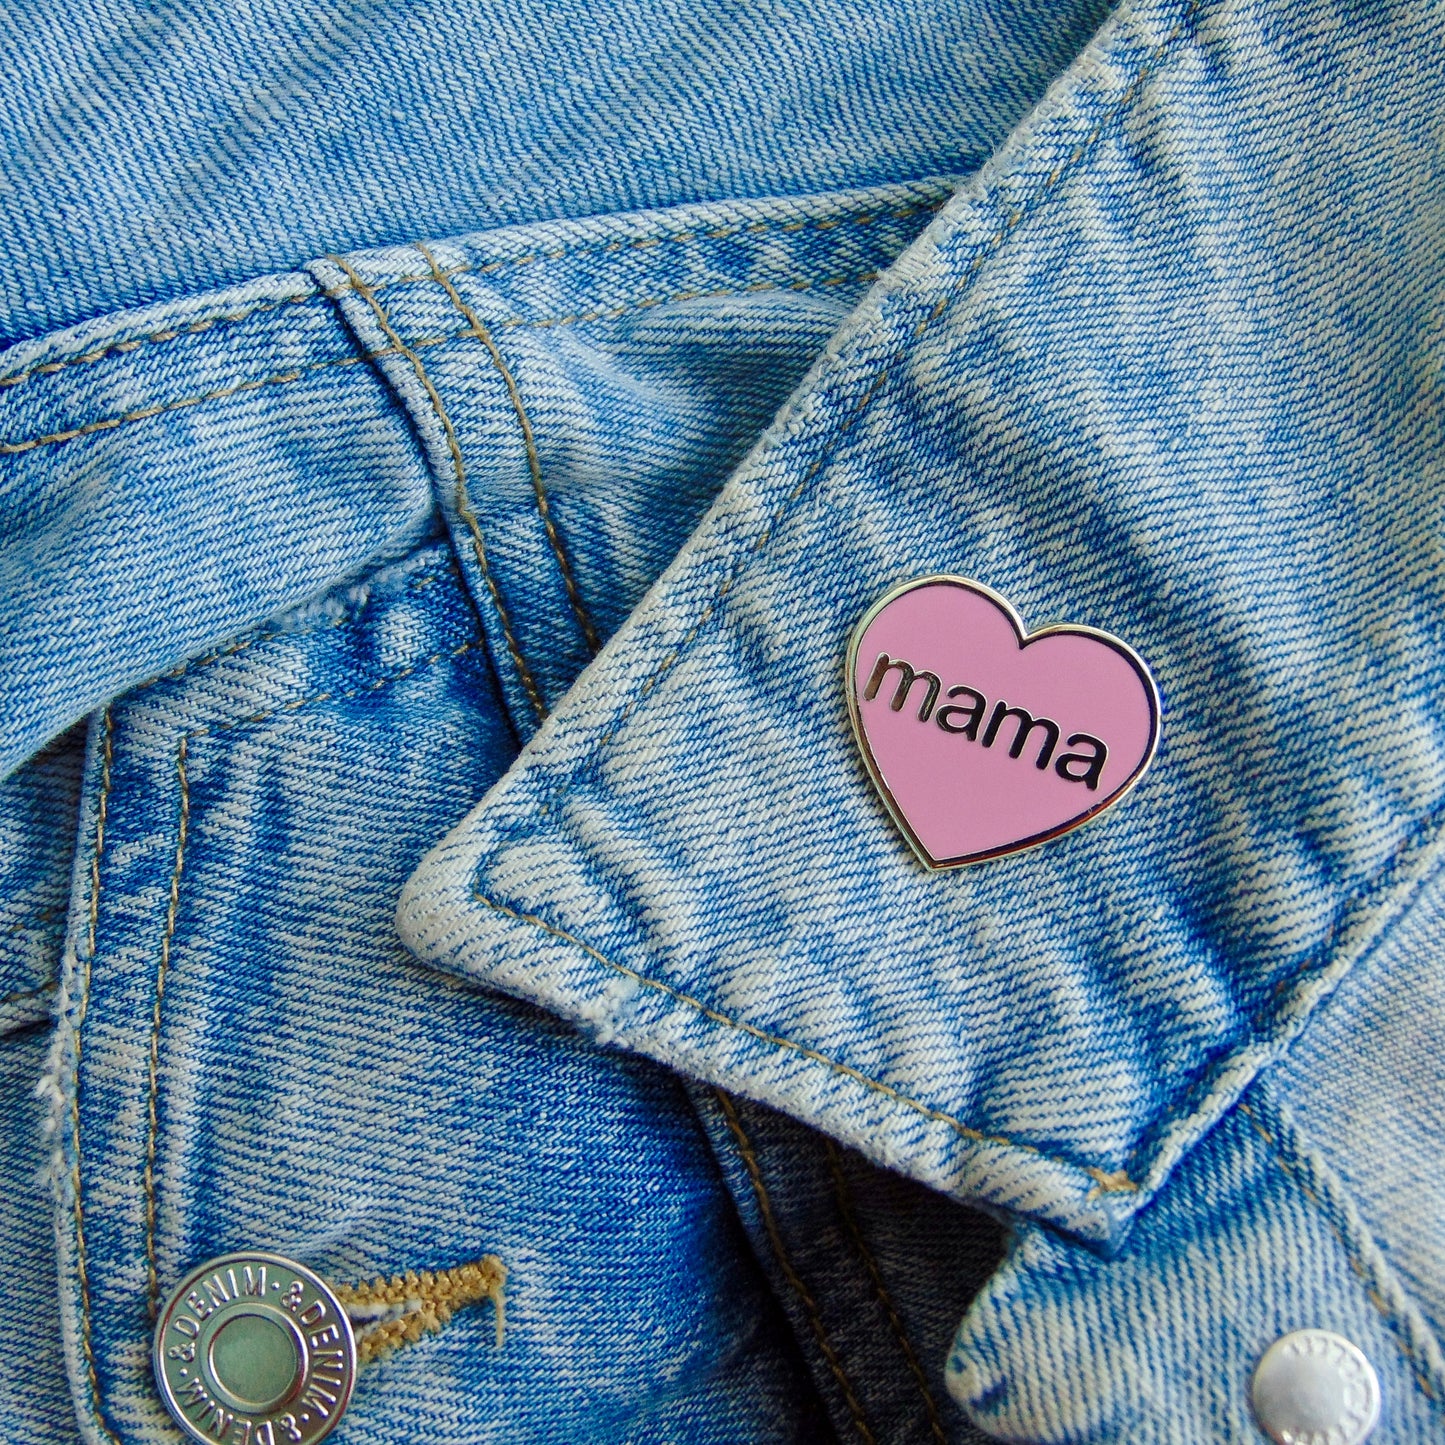 Mama Pin Badge - Pink and Silver